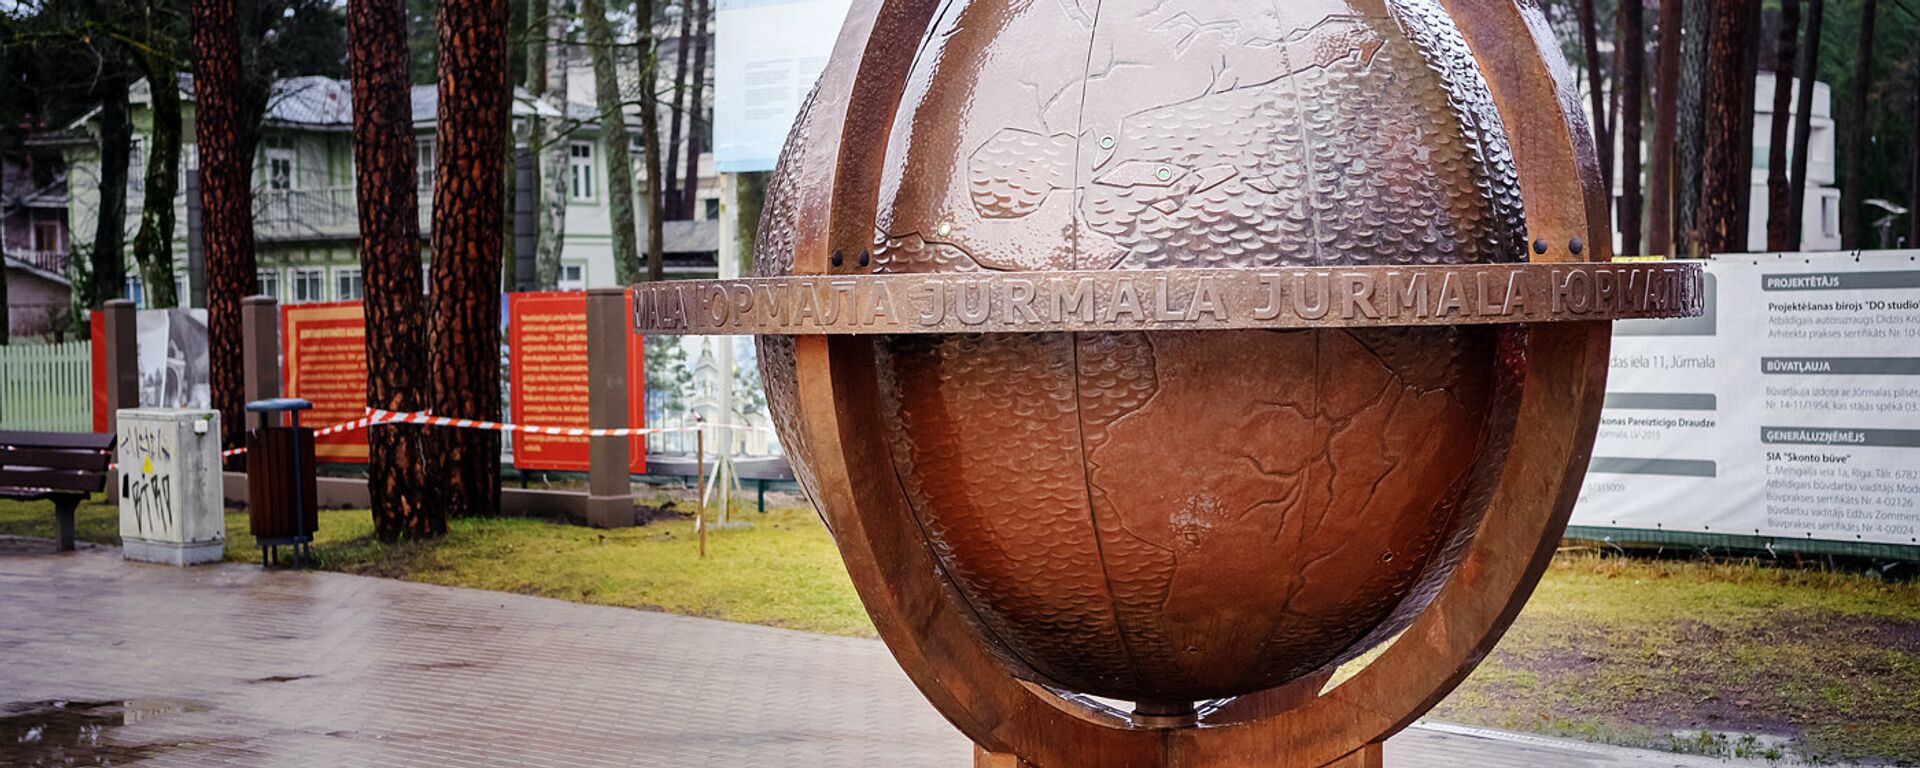 Юрмальский глобус на улице Йомас - Sputnik Латвия, 1920, 12.05.2021